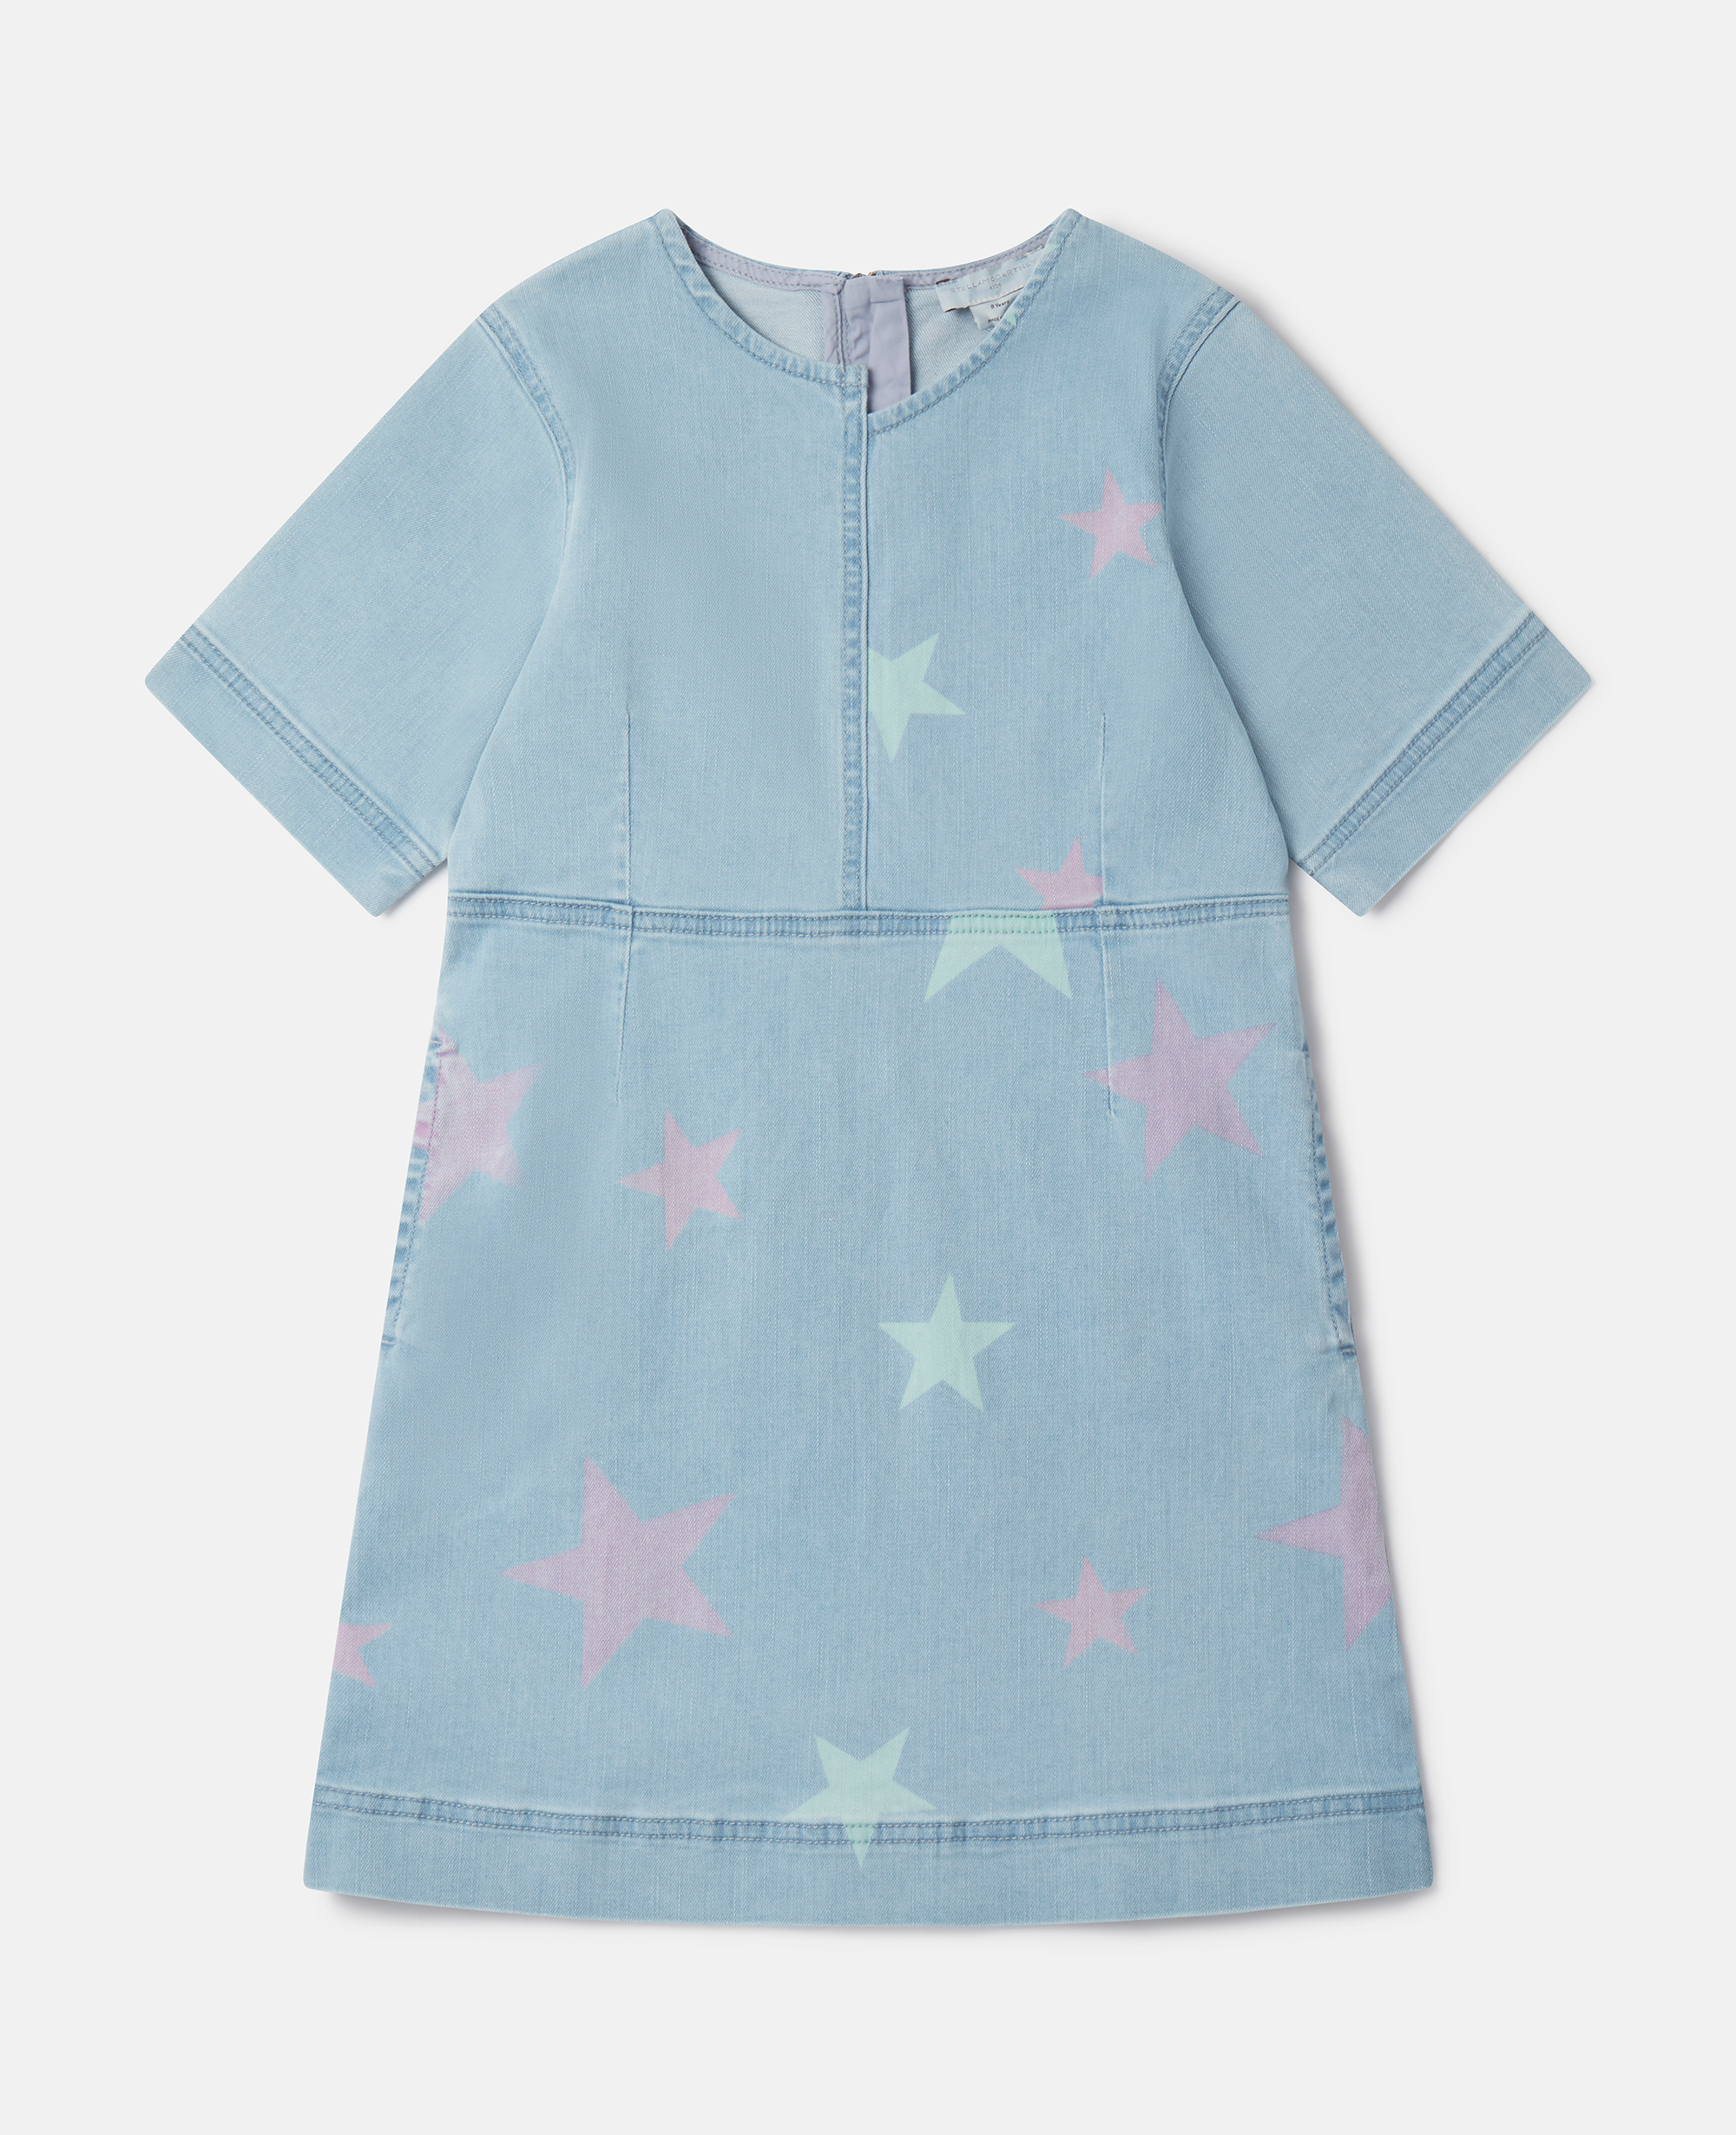 Stella Mccartney Kids' Stella Star Print Denim T-shirt Dress In Blue